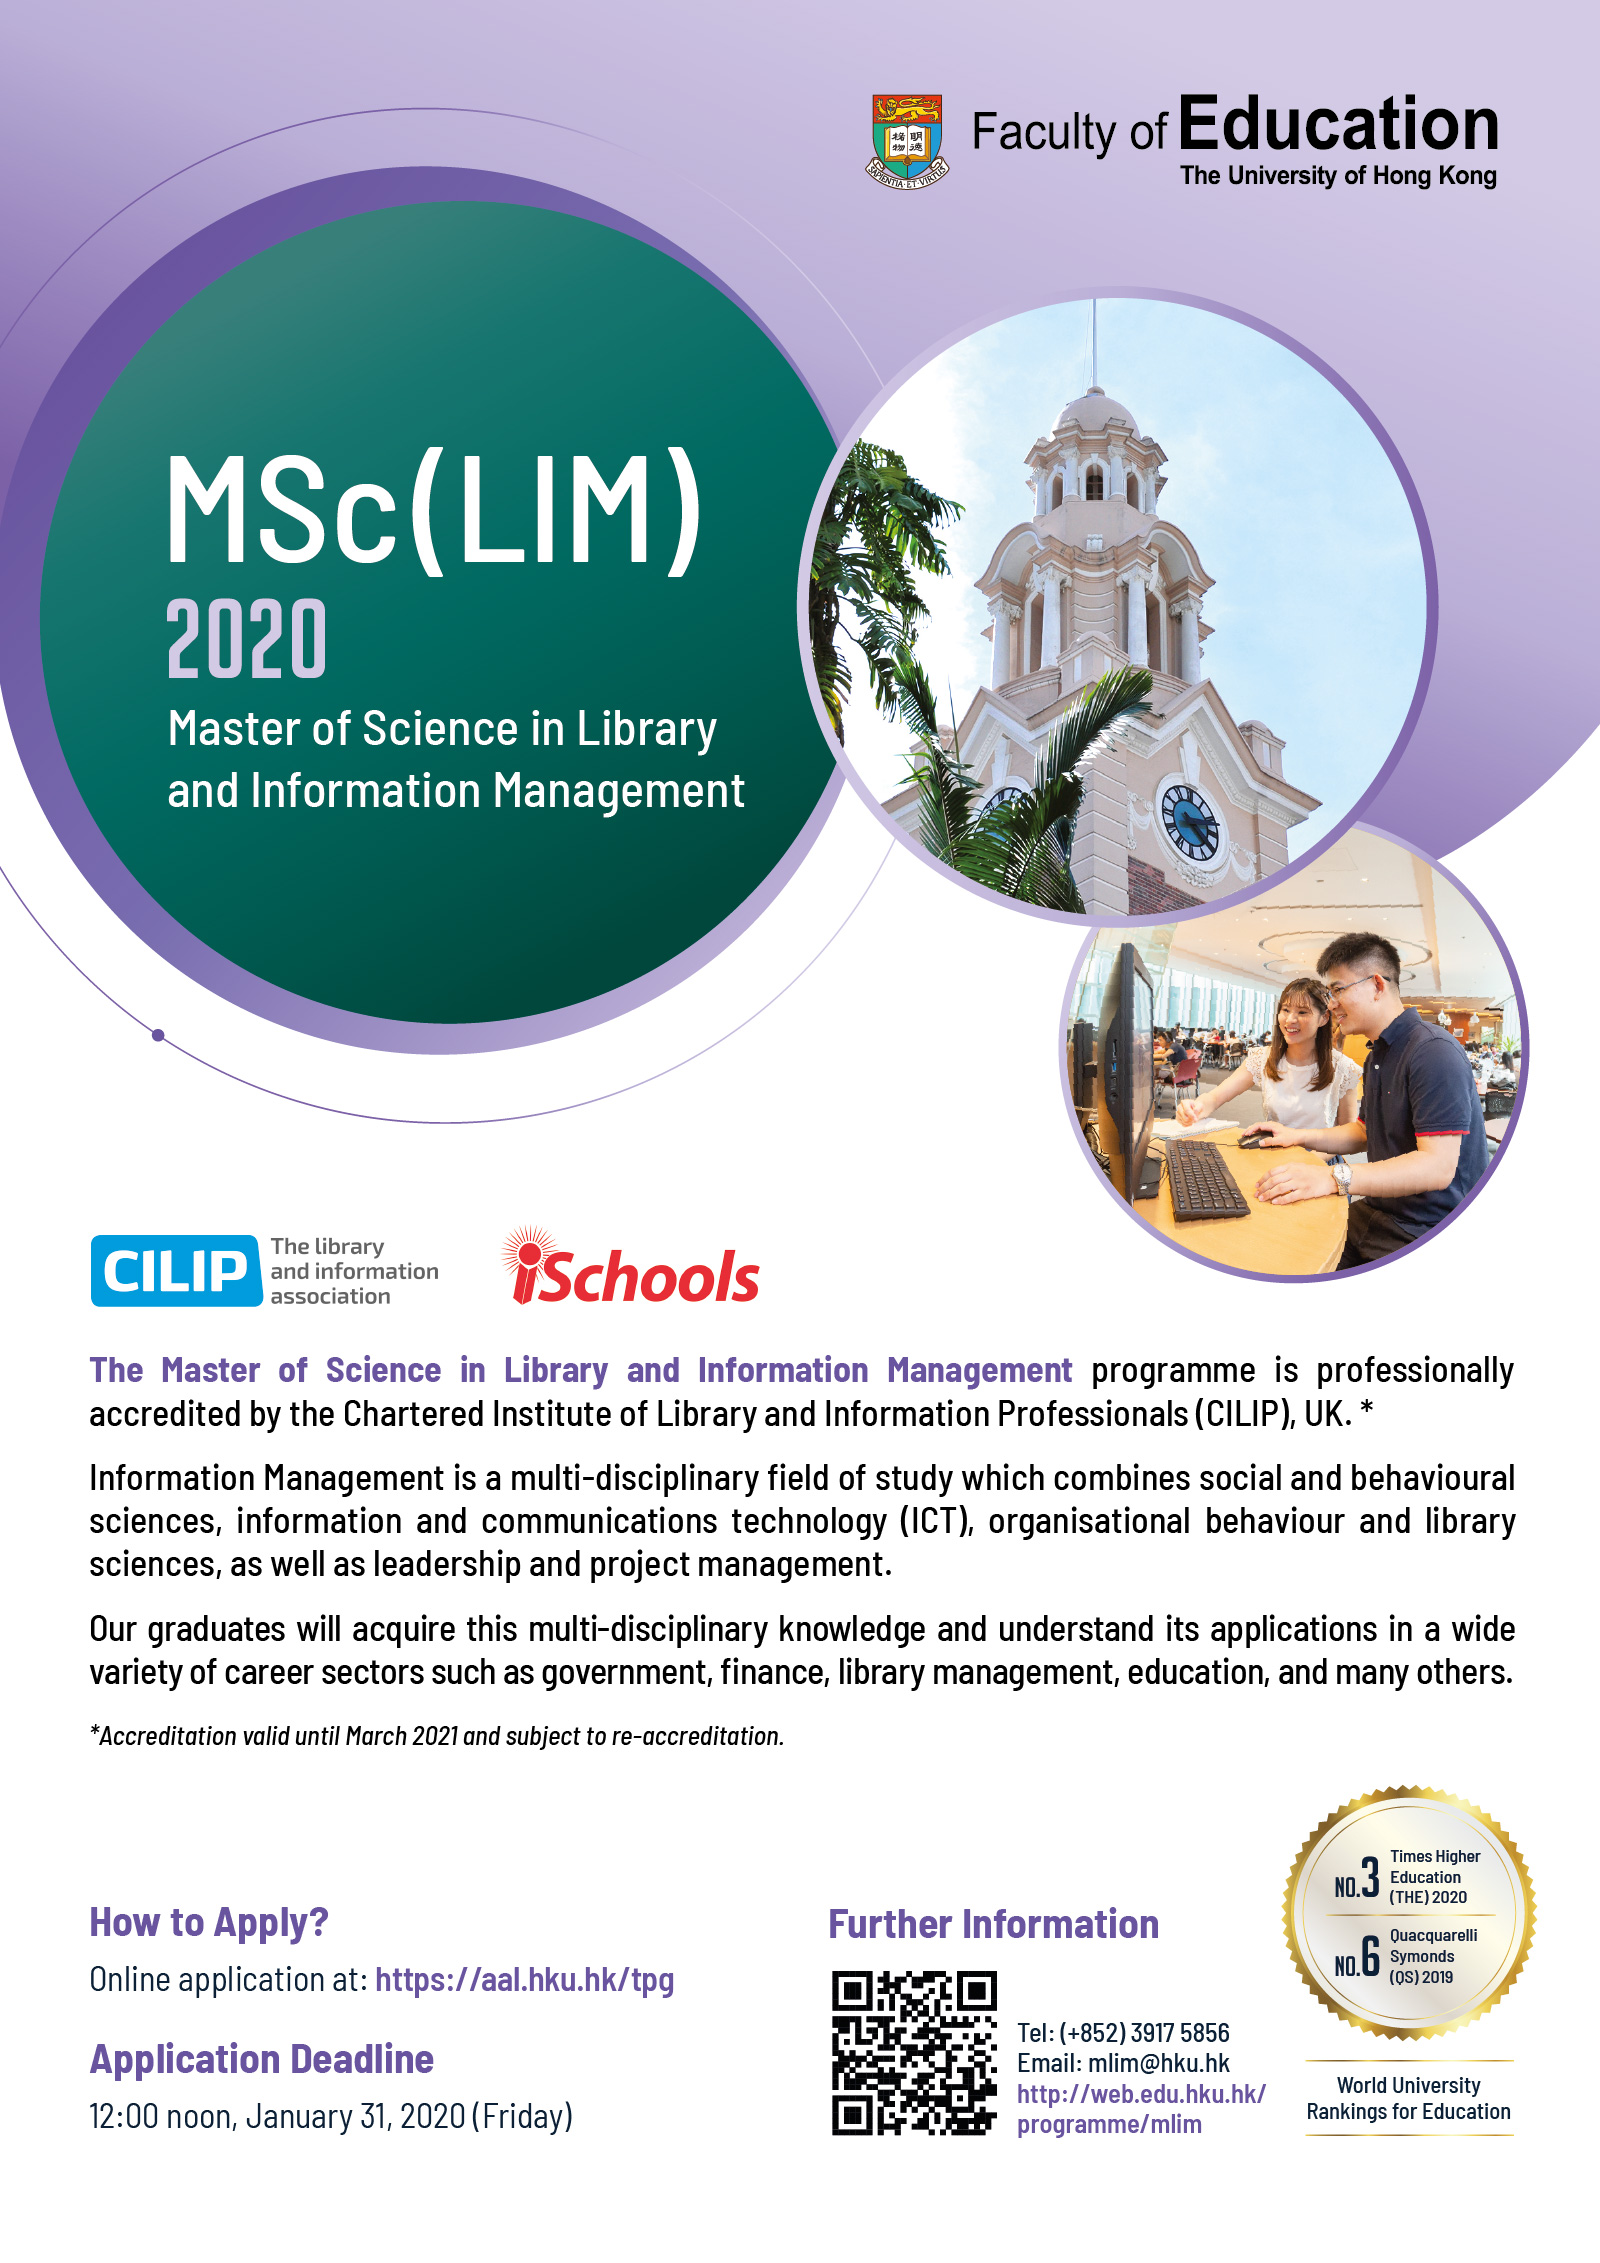 MSc(LIM) 2020 intake 